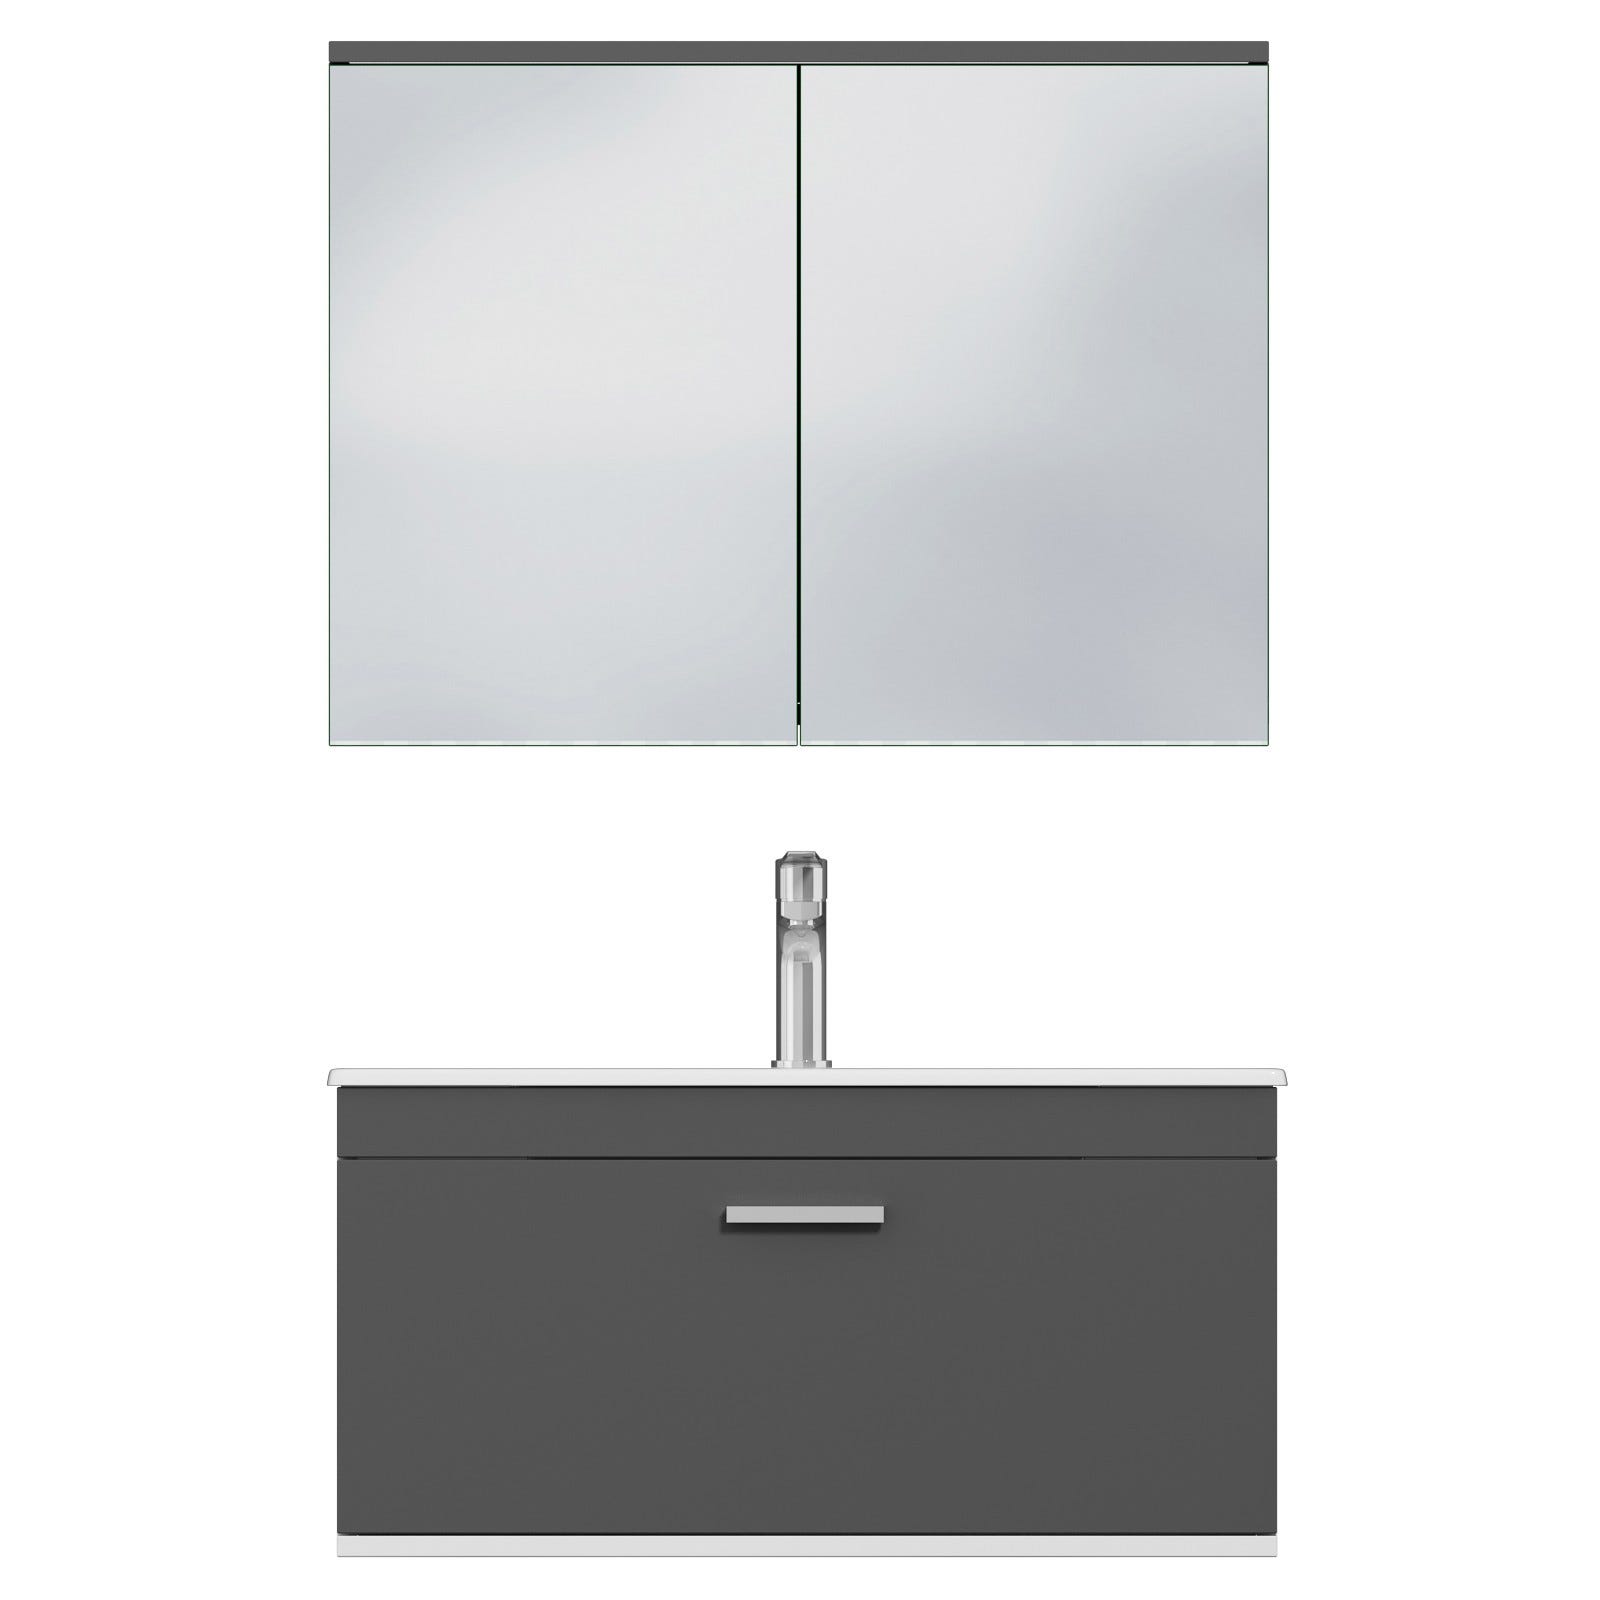 RUBITE Meuble salle de bain simple vasque 1 tiroir gris anthracite largeur 80 cm + miroir armoire 4